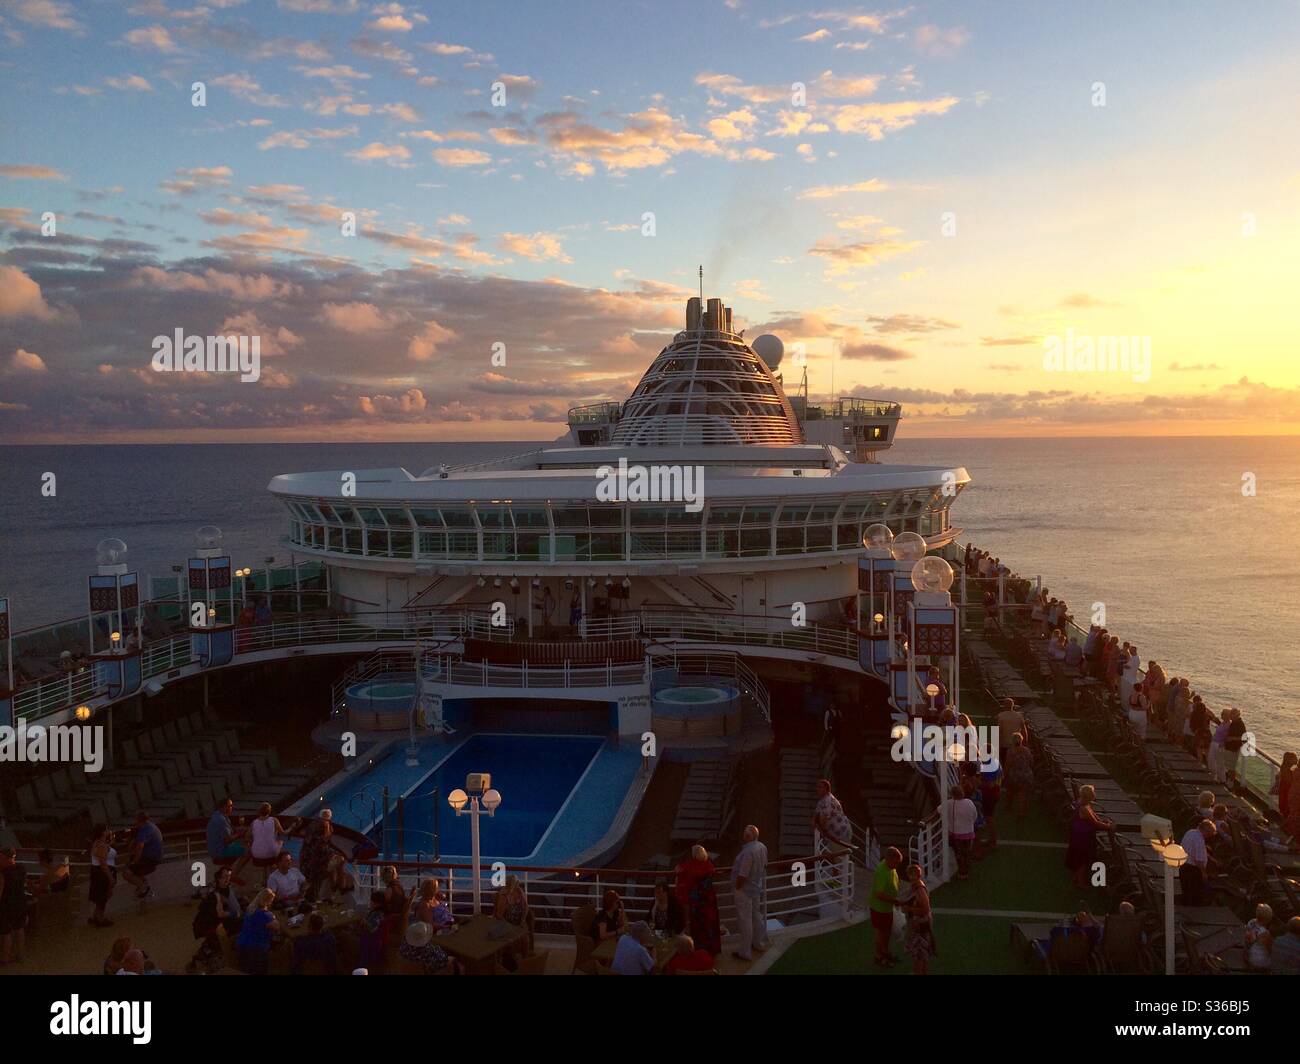 Cruise ship sets sail at sunset Stock Photo